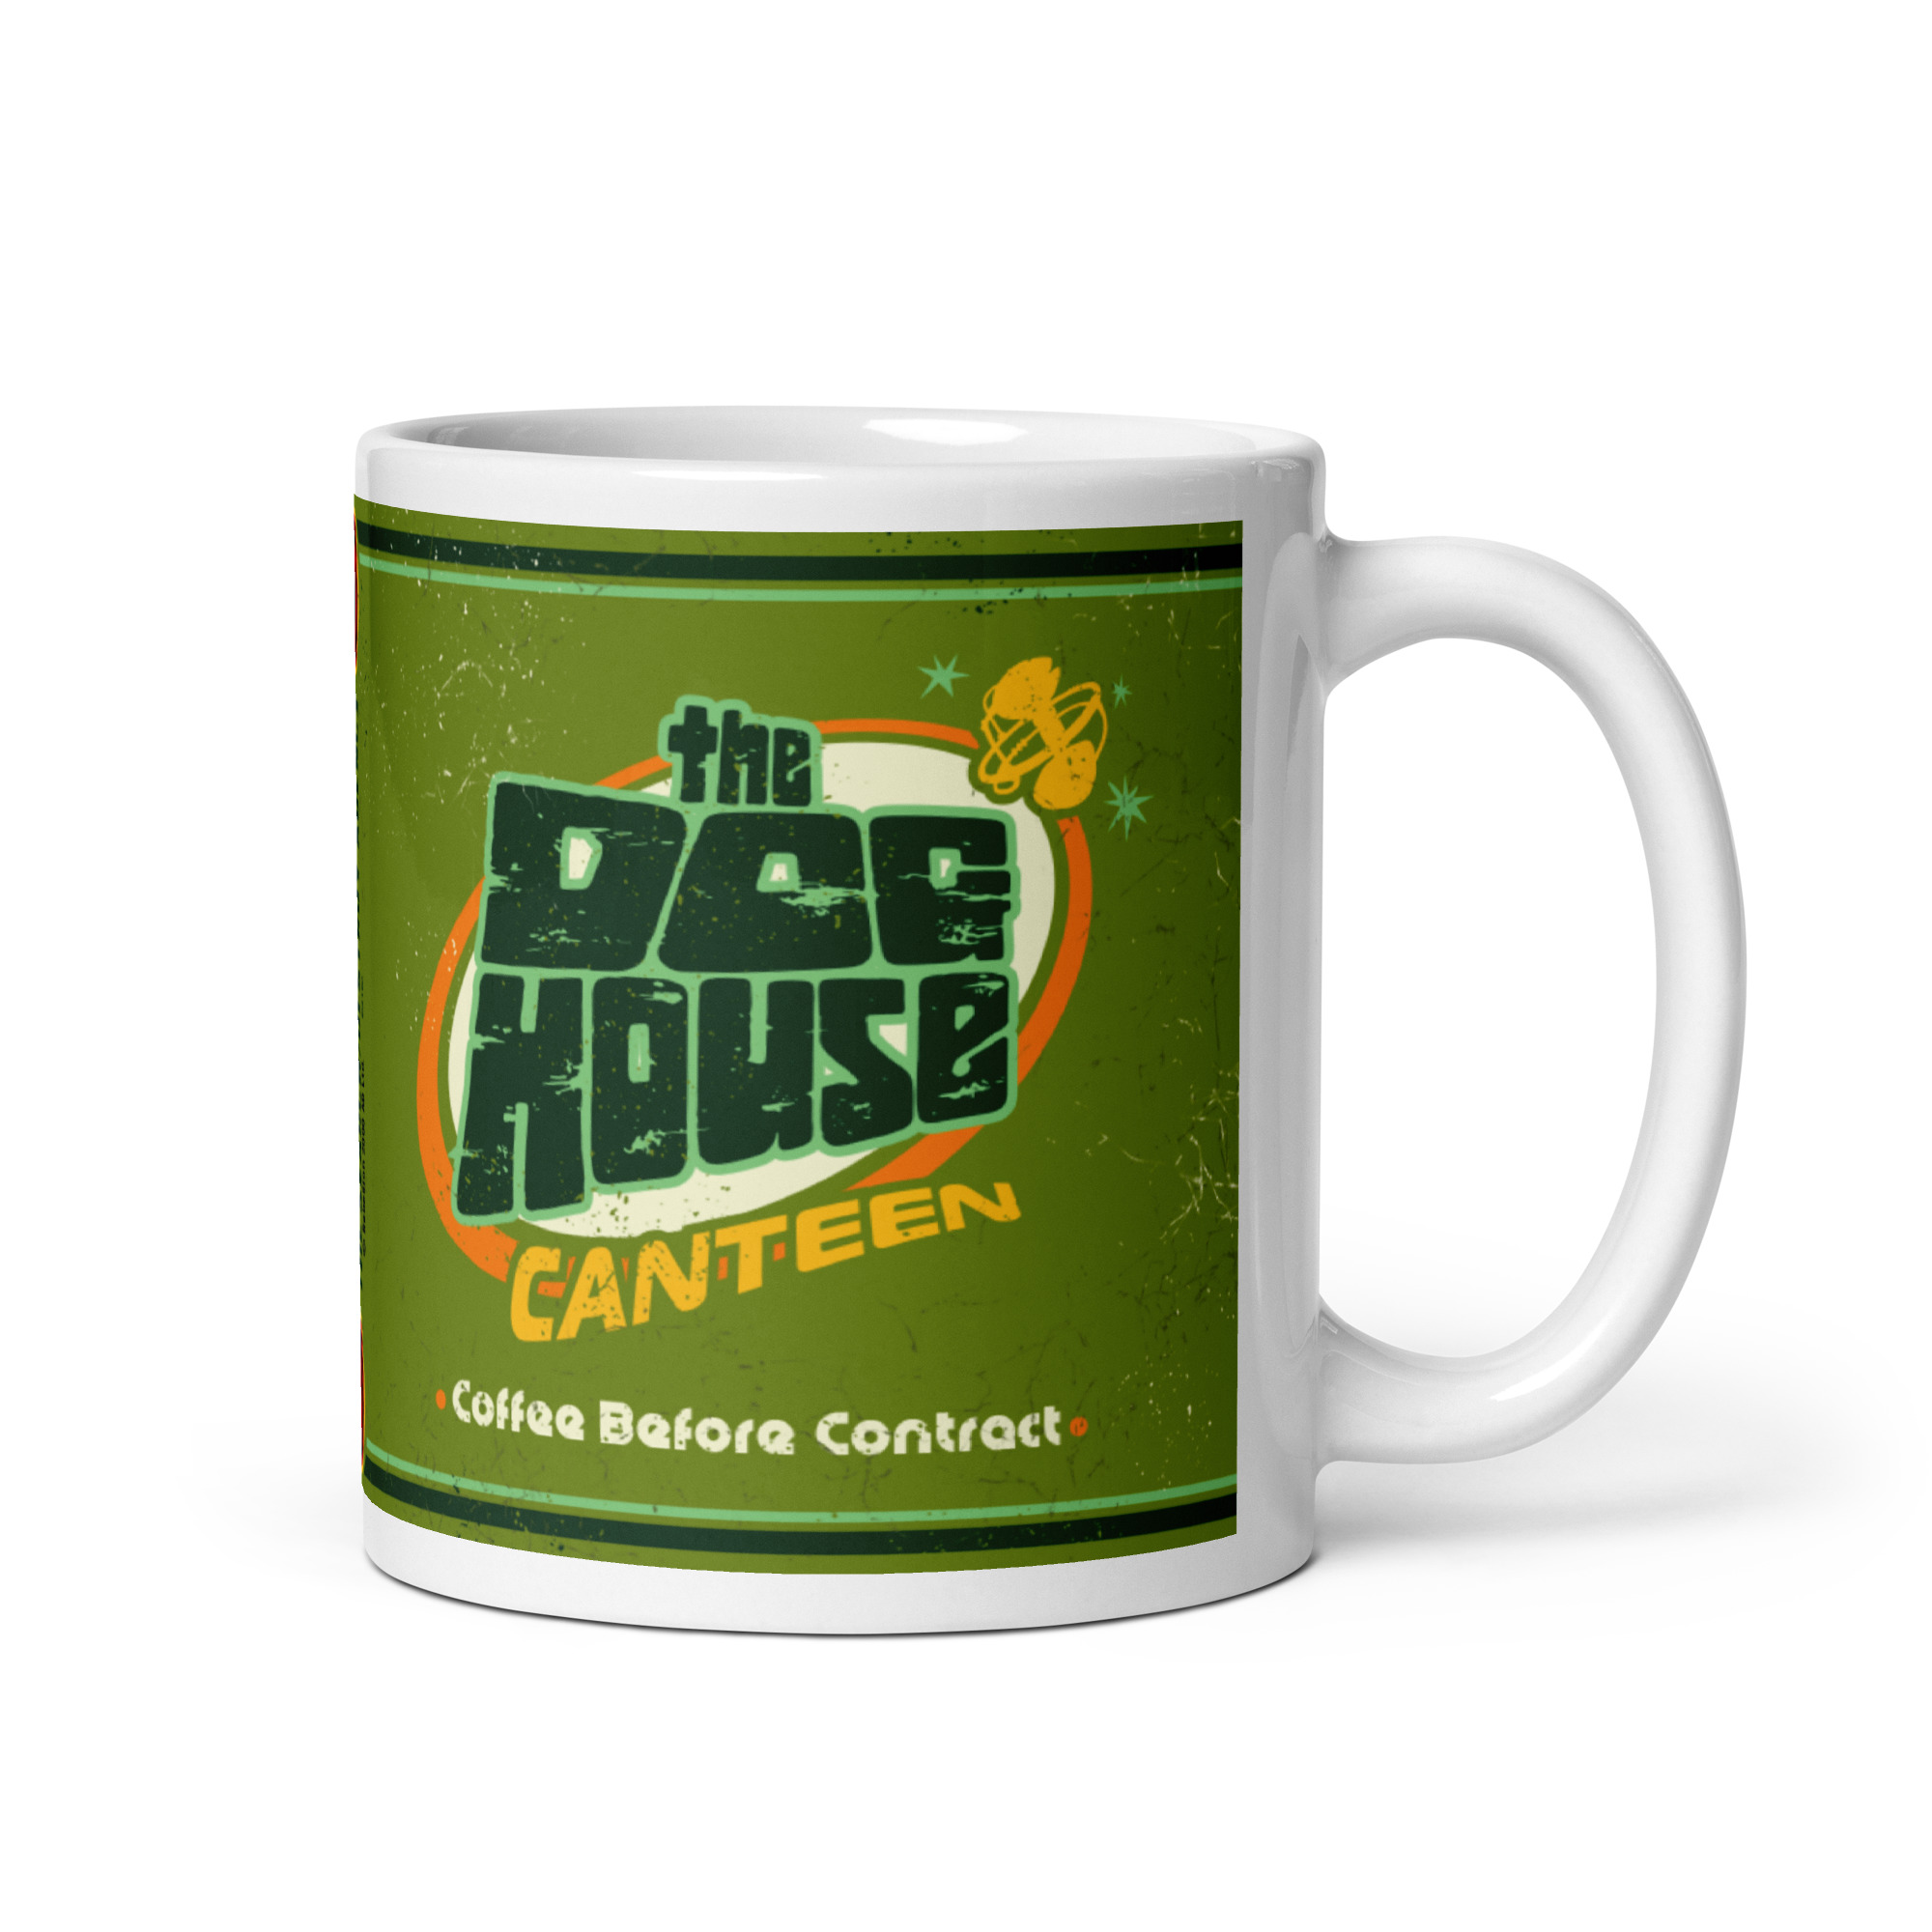 Green mug with 